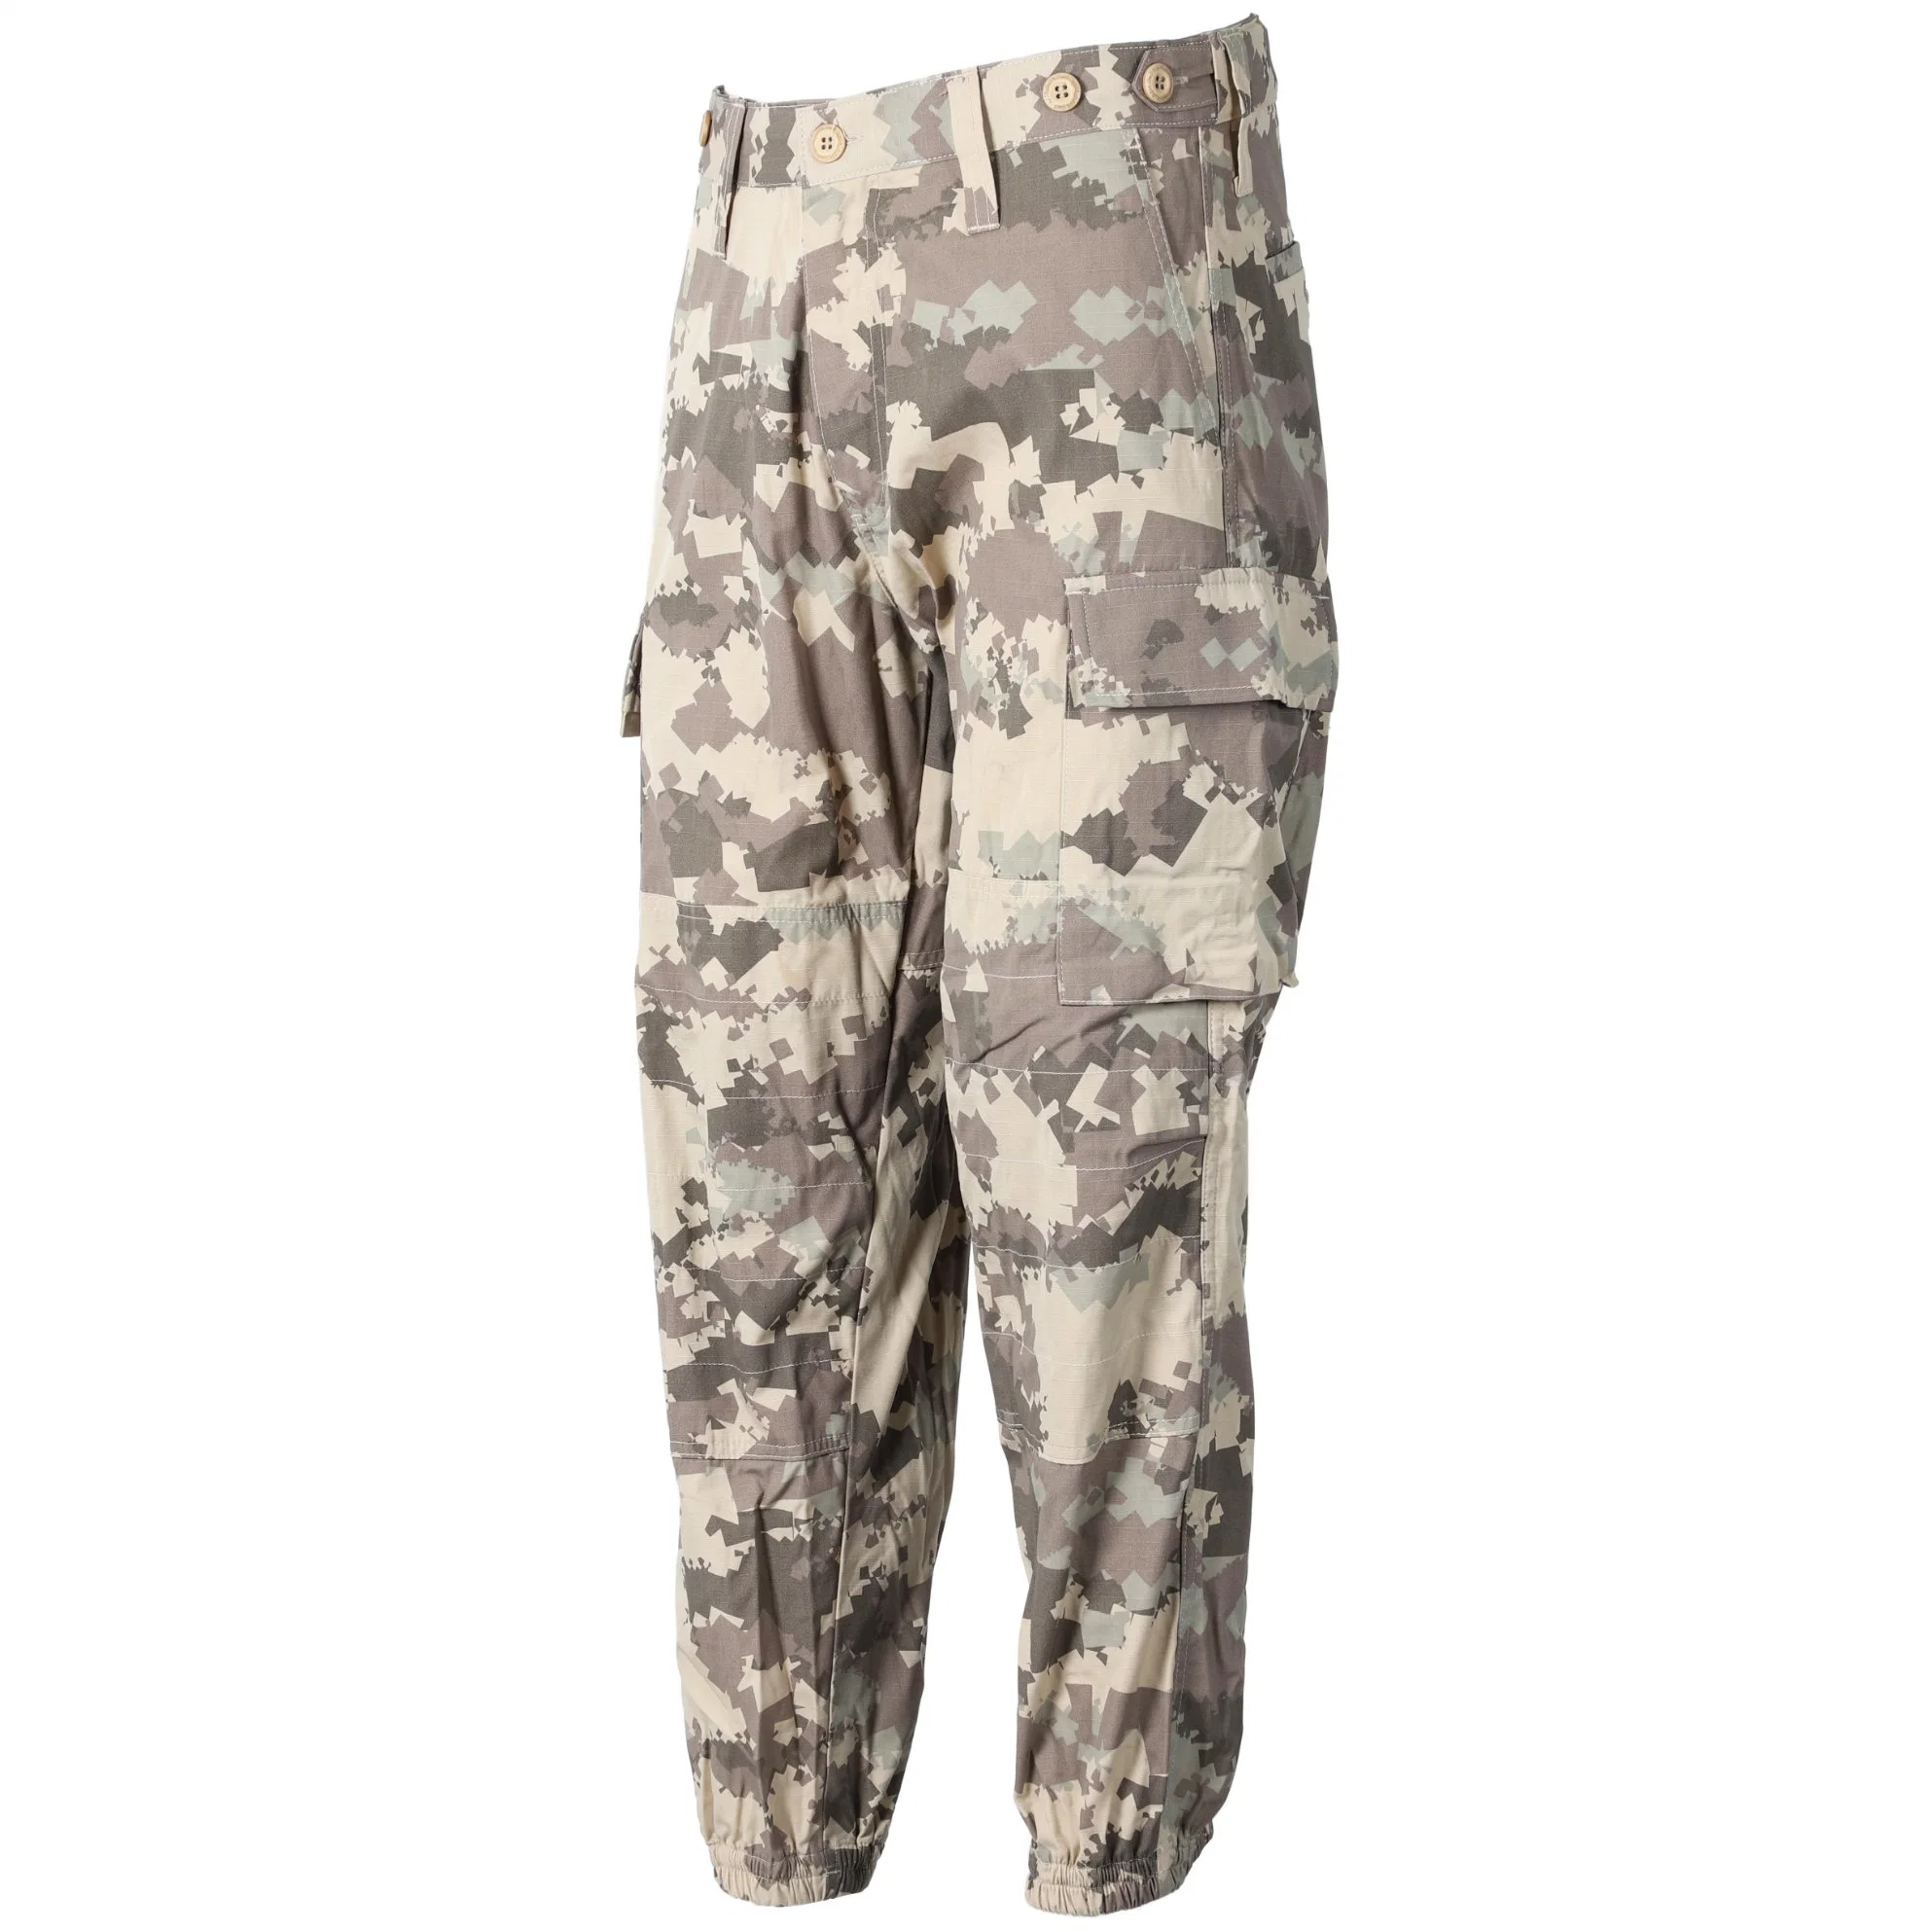 Mens de estilo militar uniforme táctico poli algodón Rip-Stop / Carga Pantalón Bdu